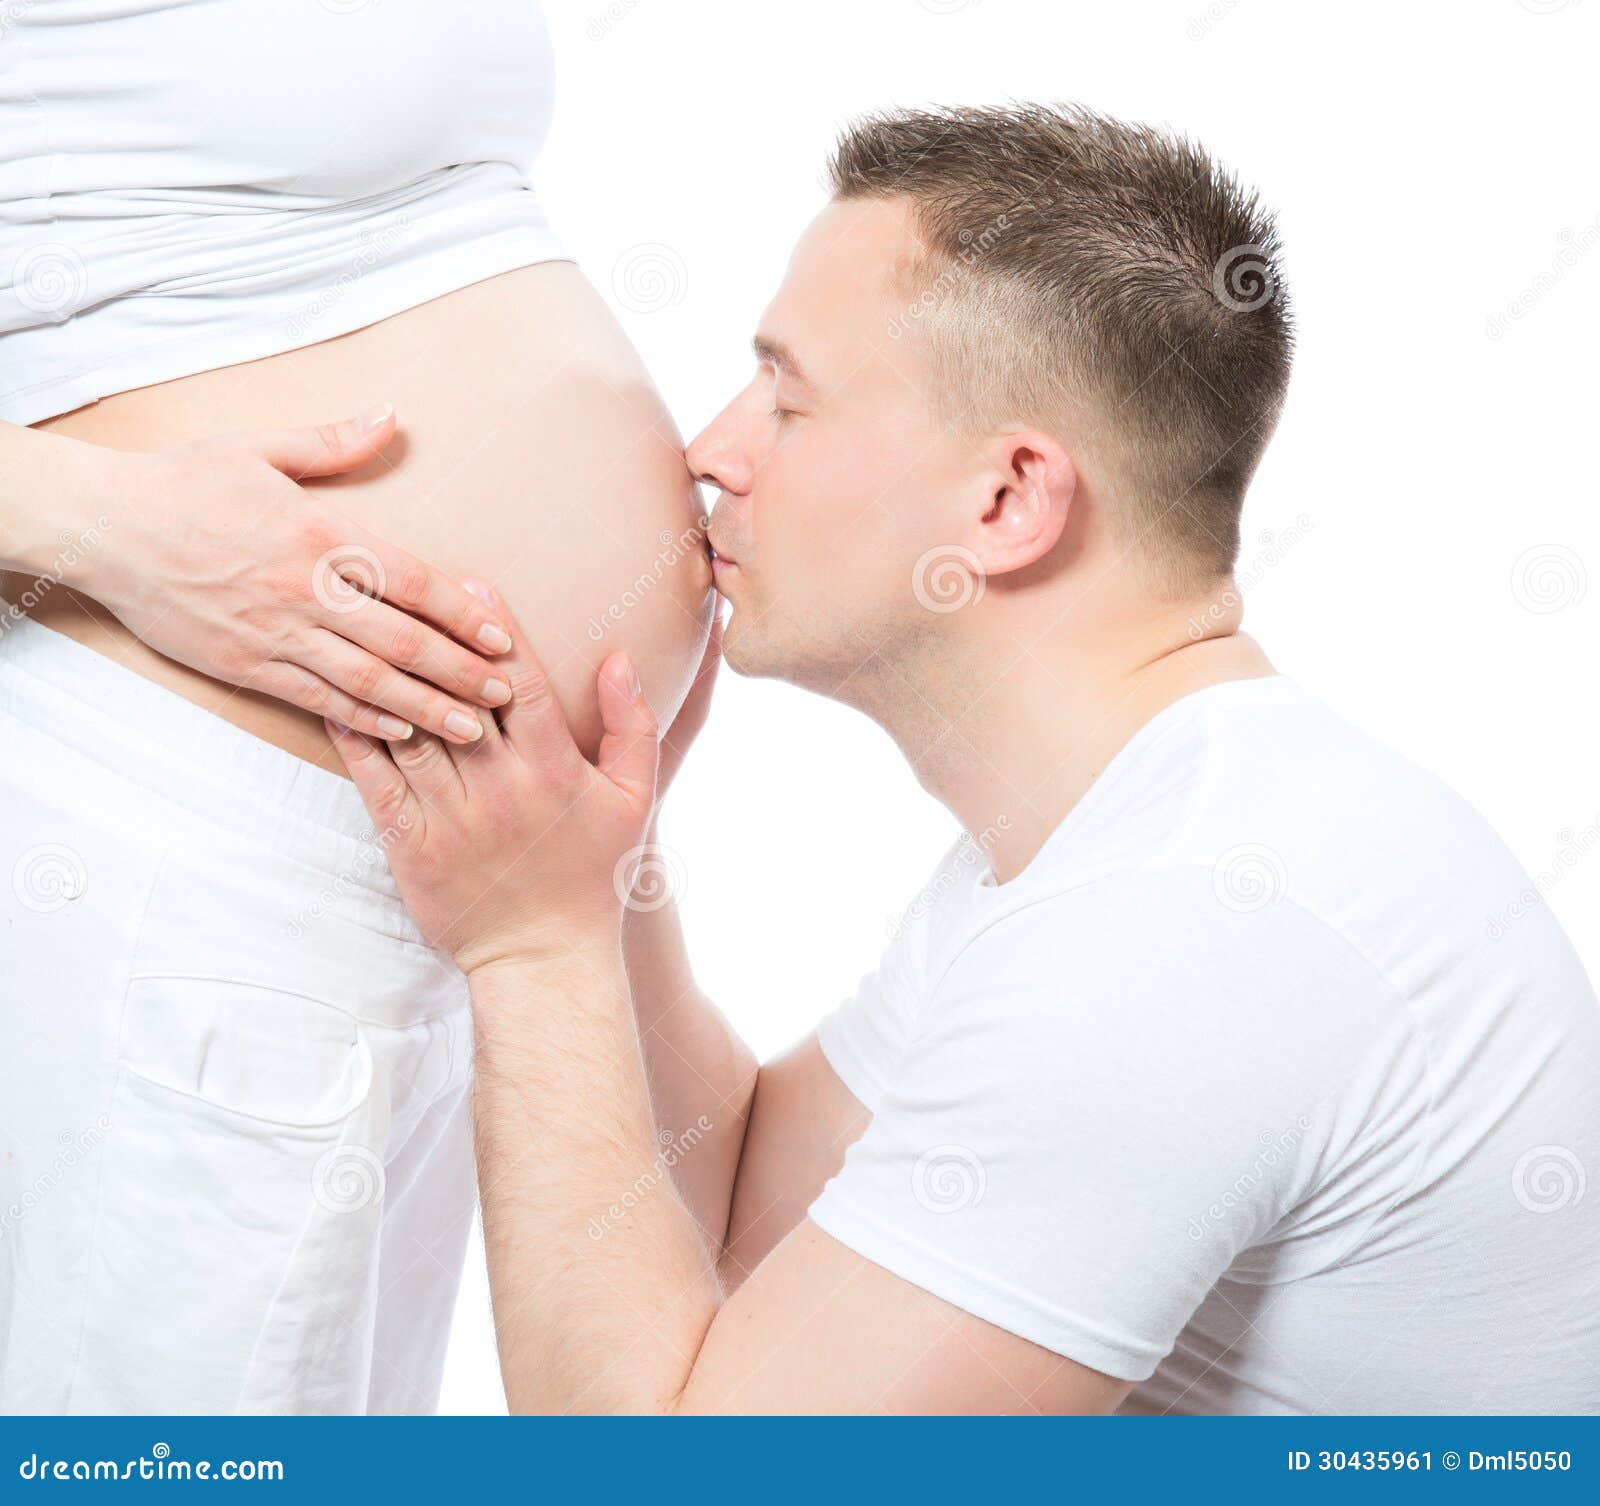 Беременна племянник. Беременных женщин с мужчинами. Мужчина целует беременный животик. Беременные мужчины.